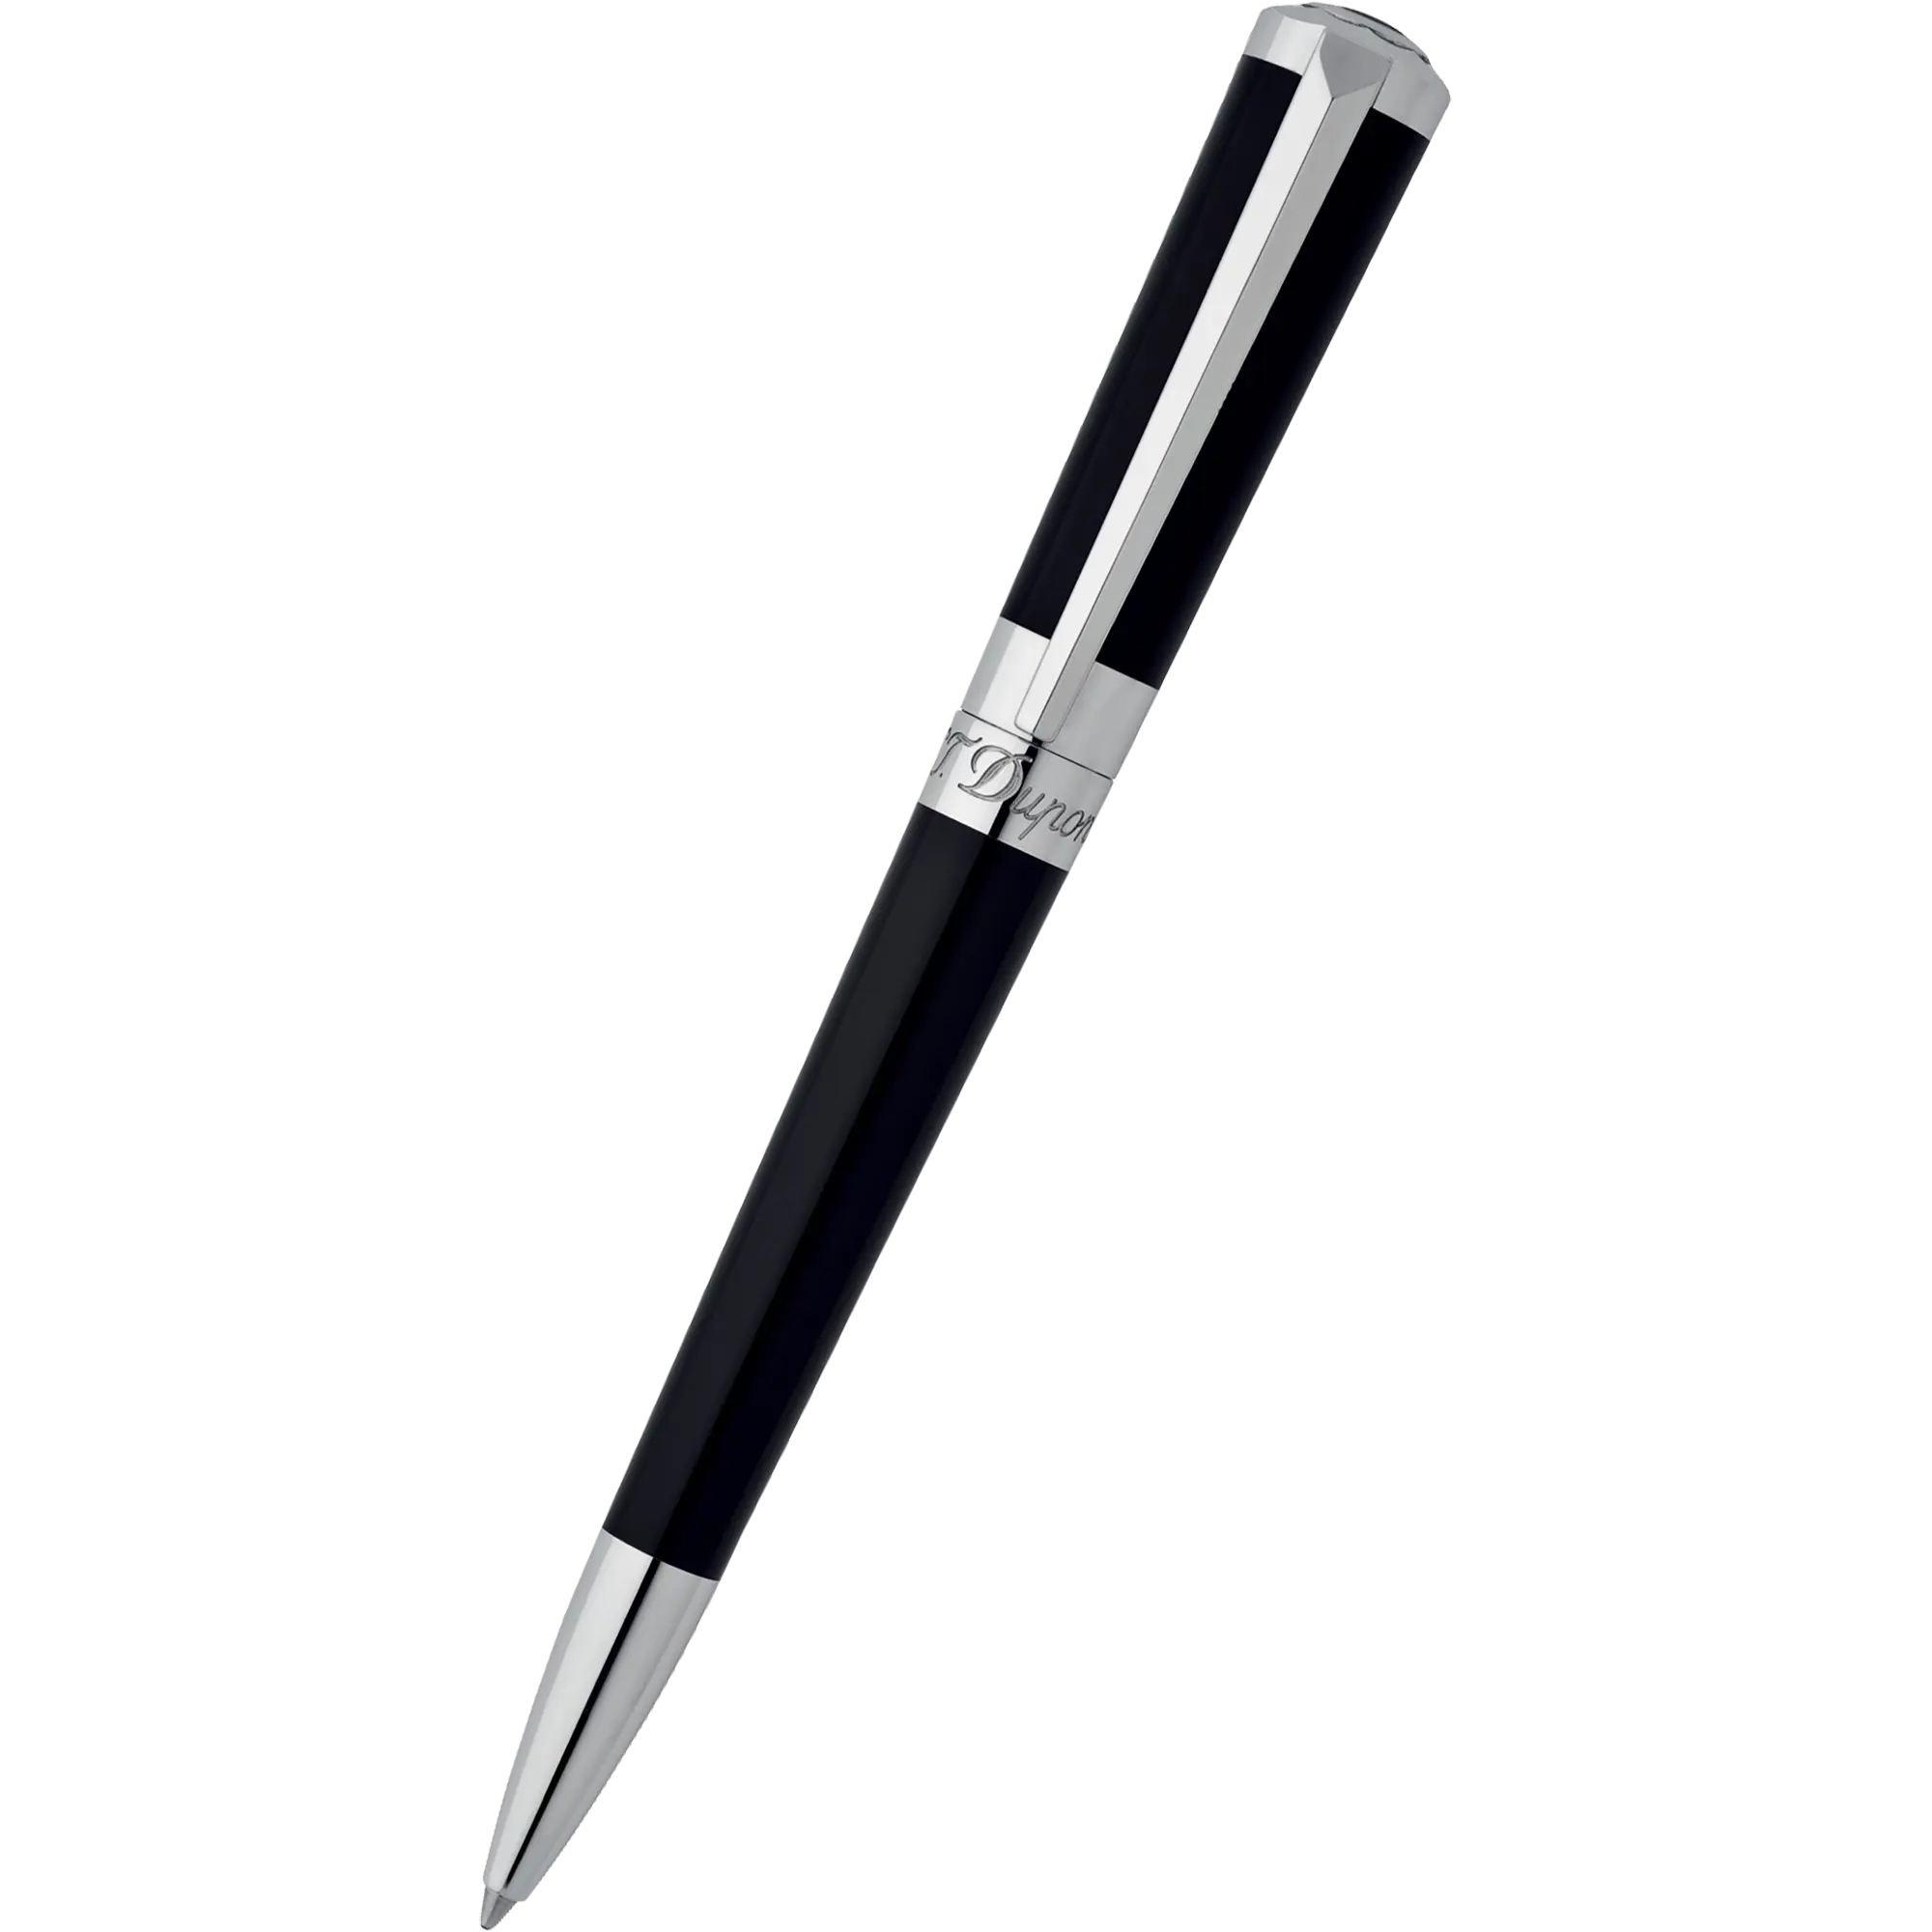 S T Dupont Liberte Black Lacquer Ballpoint Pen-Pen Boutique Ltd